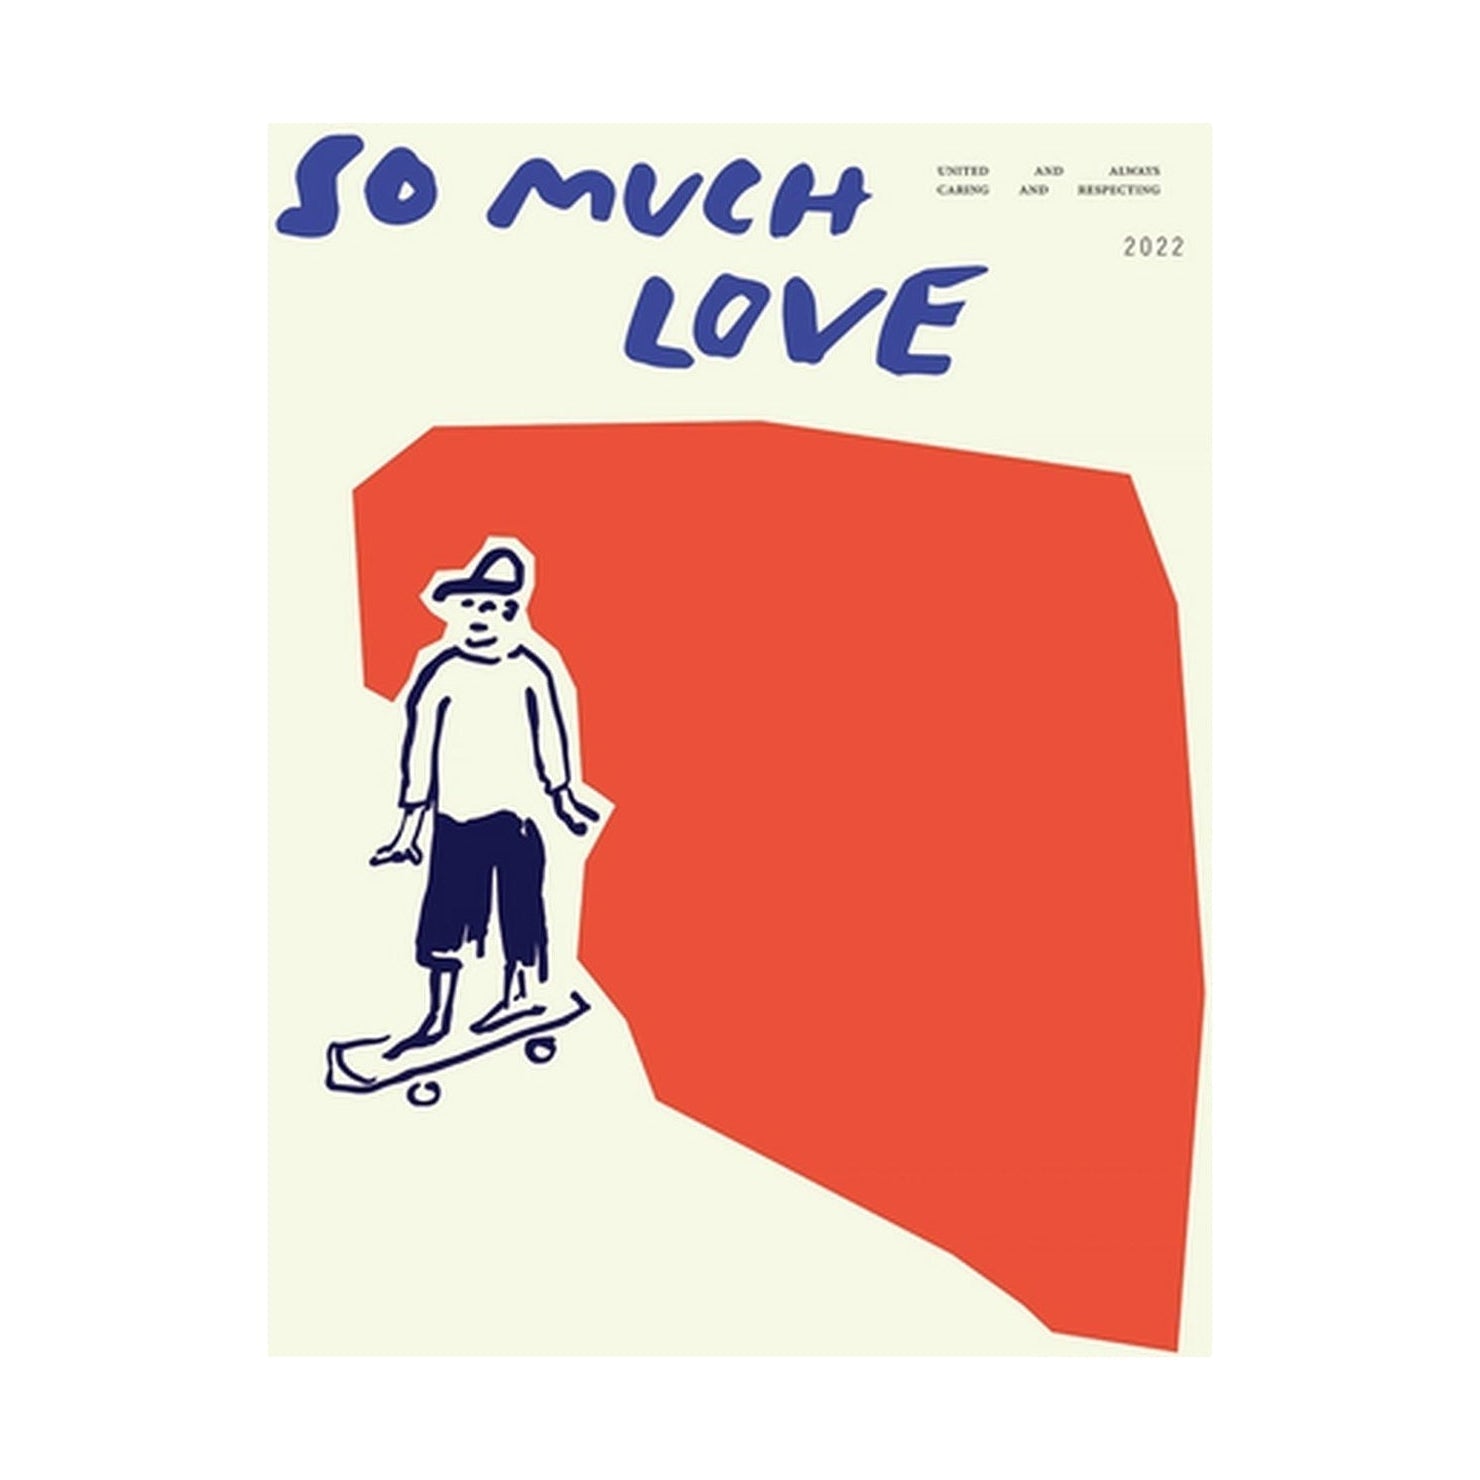 Collective de papel Tan cartel de skateboard de amor, 30x40 cm